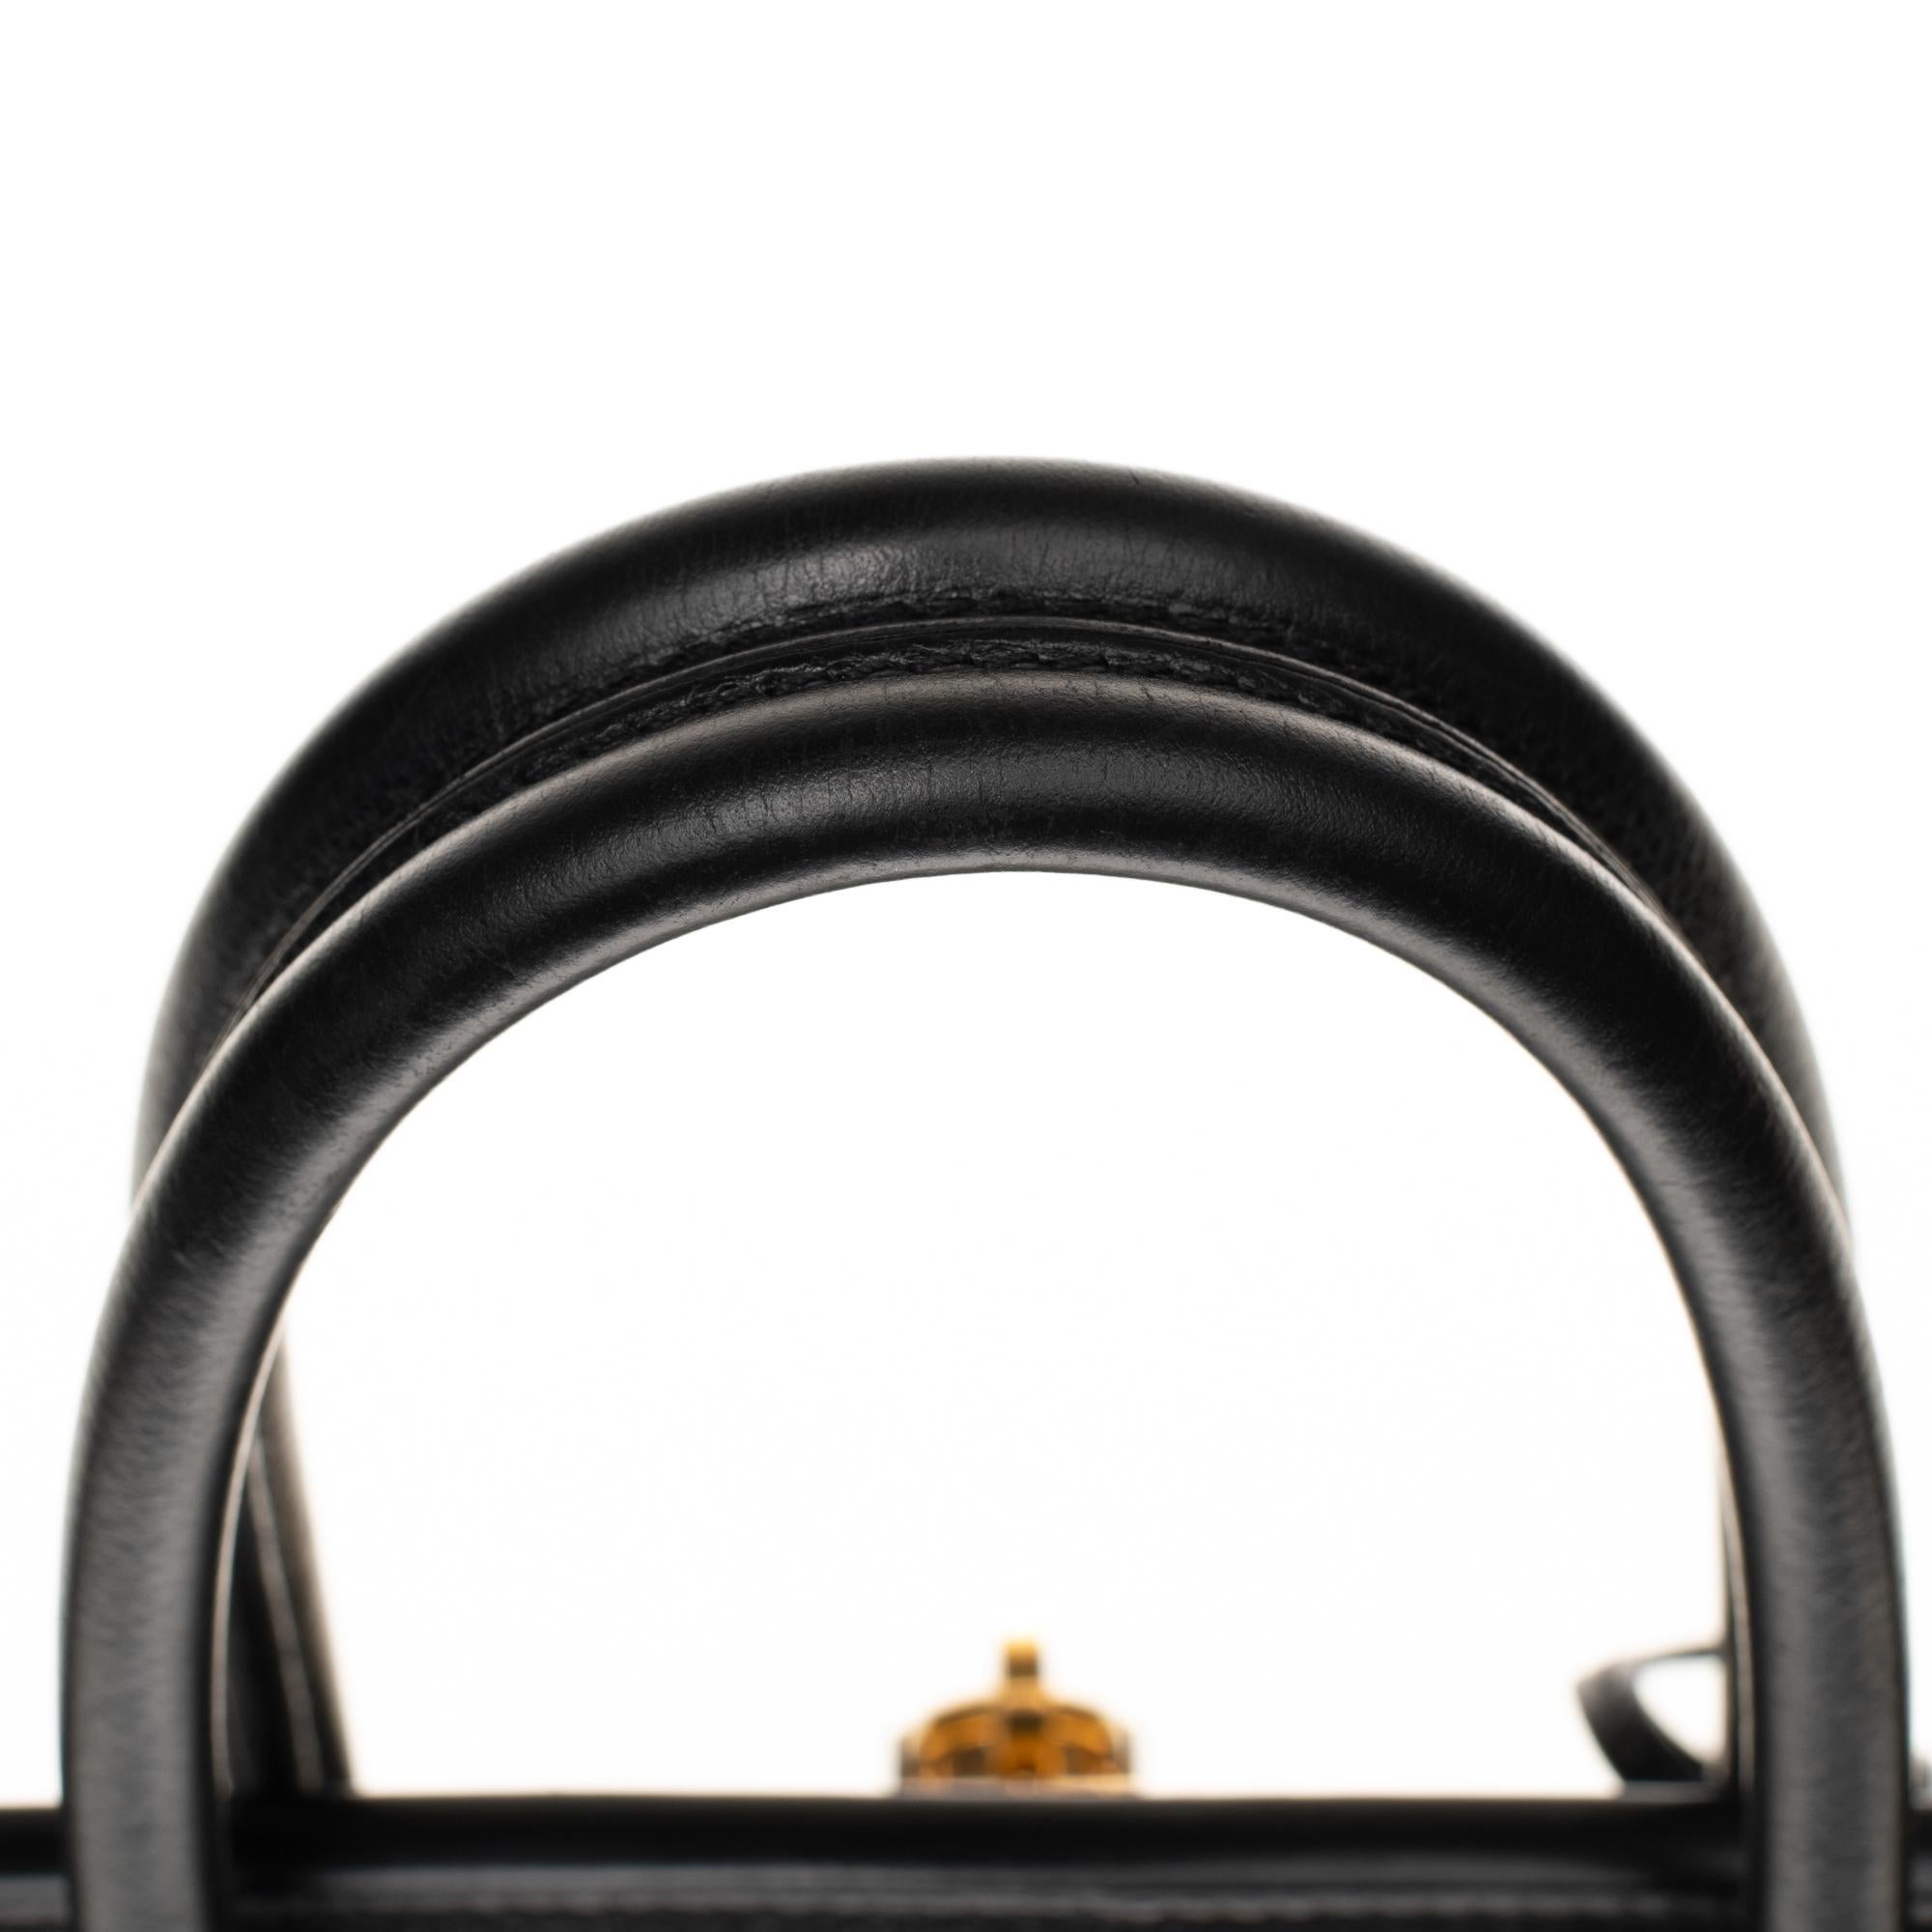 Hermès Birkin 35 handbag in black Courchevel leather, Gold hardware 3